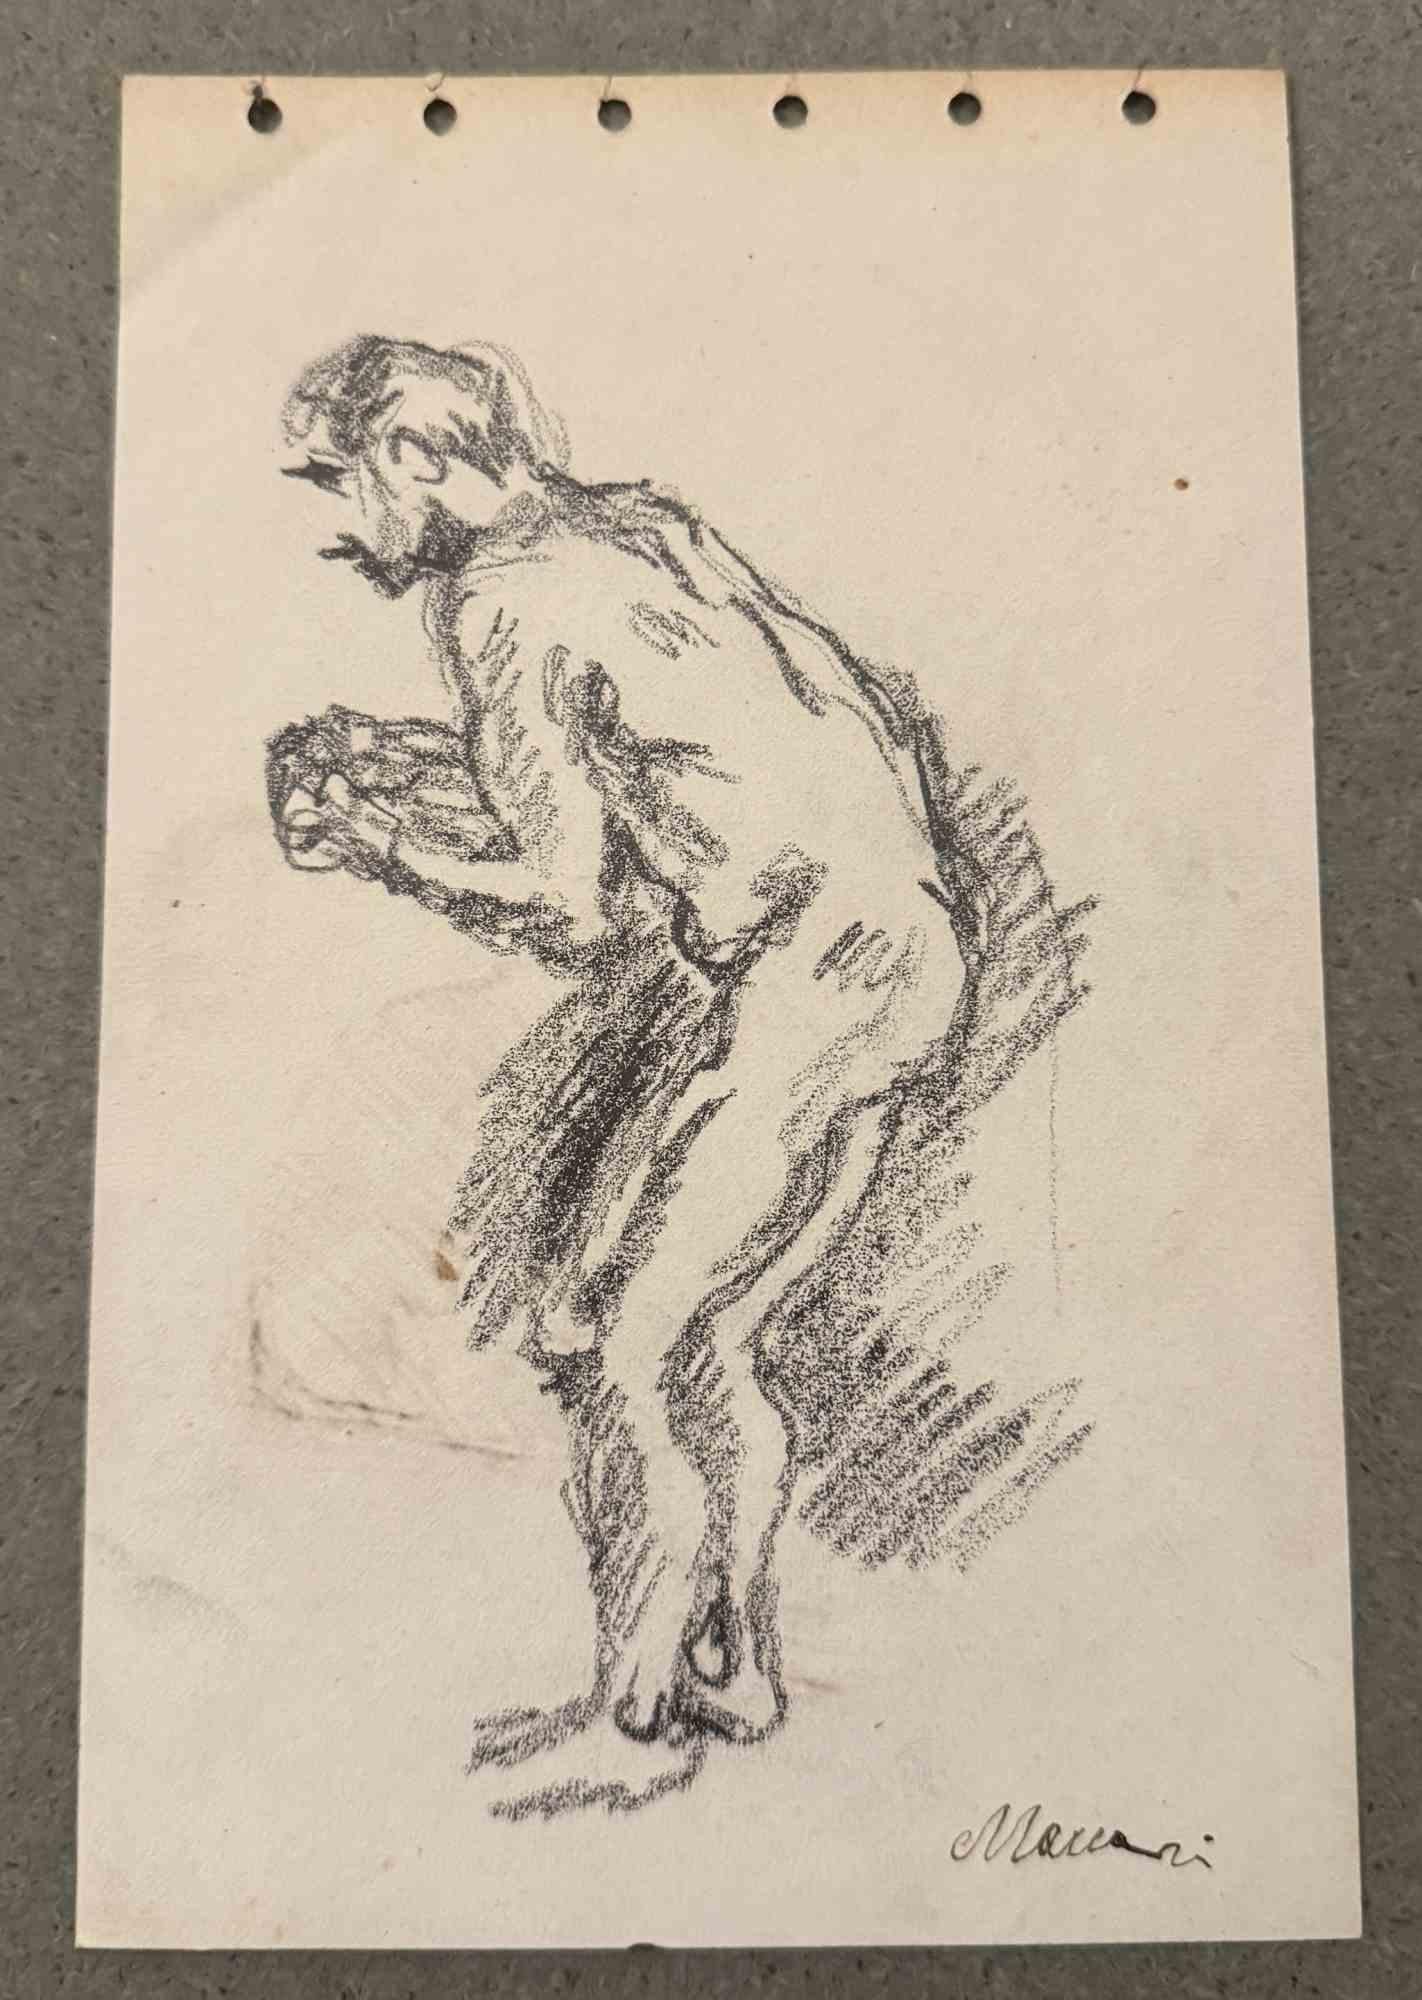 Nude est un dessin au fusain réalisé par Mino Maccari (1924-1989) au milieu du 20e siècle.

Signé à la main.

Bon état avec de légères rousseurs.

Mino Maccari (Sienne, 1924-Rome, 16 juin 1989) est un écrivain, peintre, graveur et journaliste